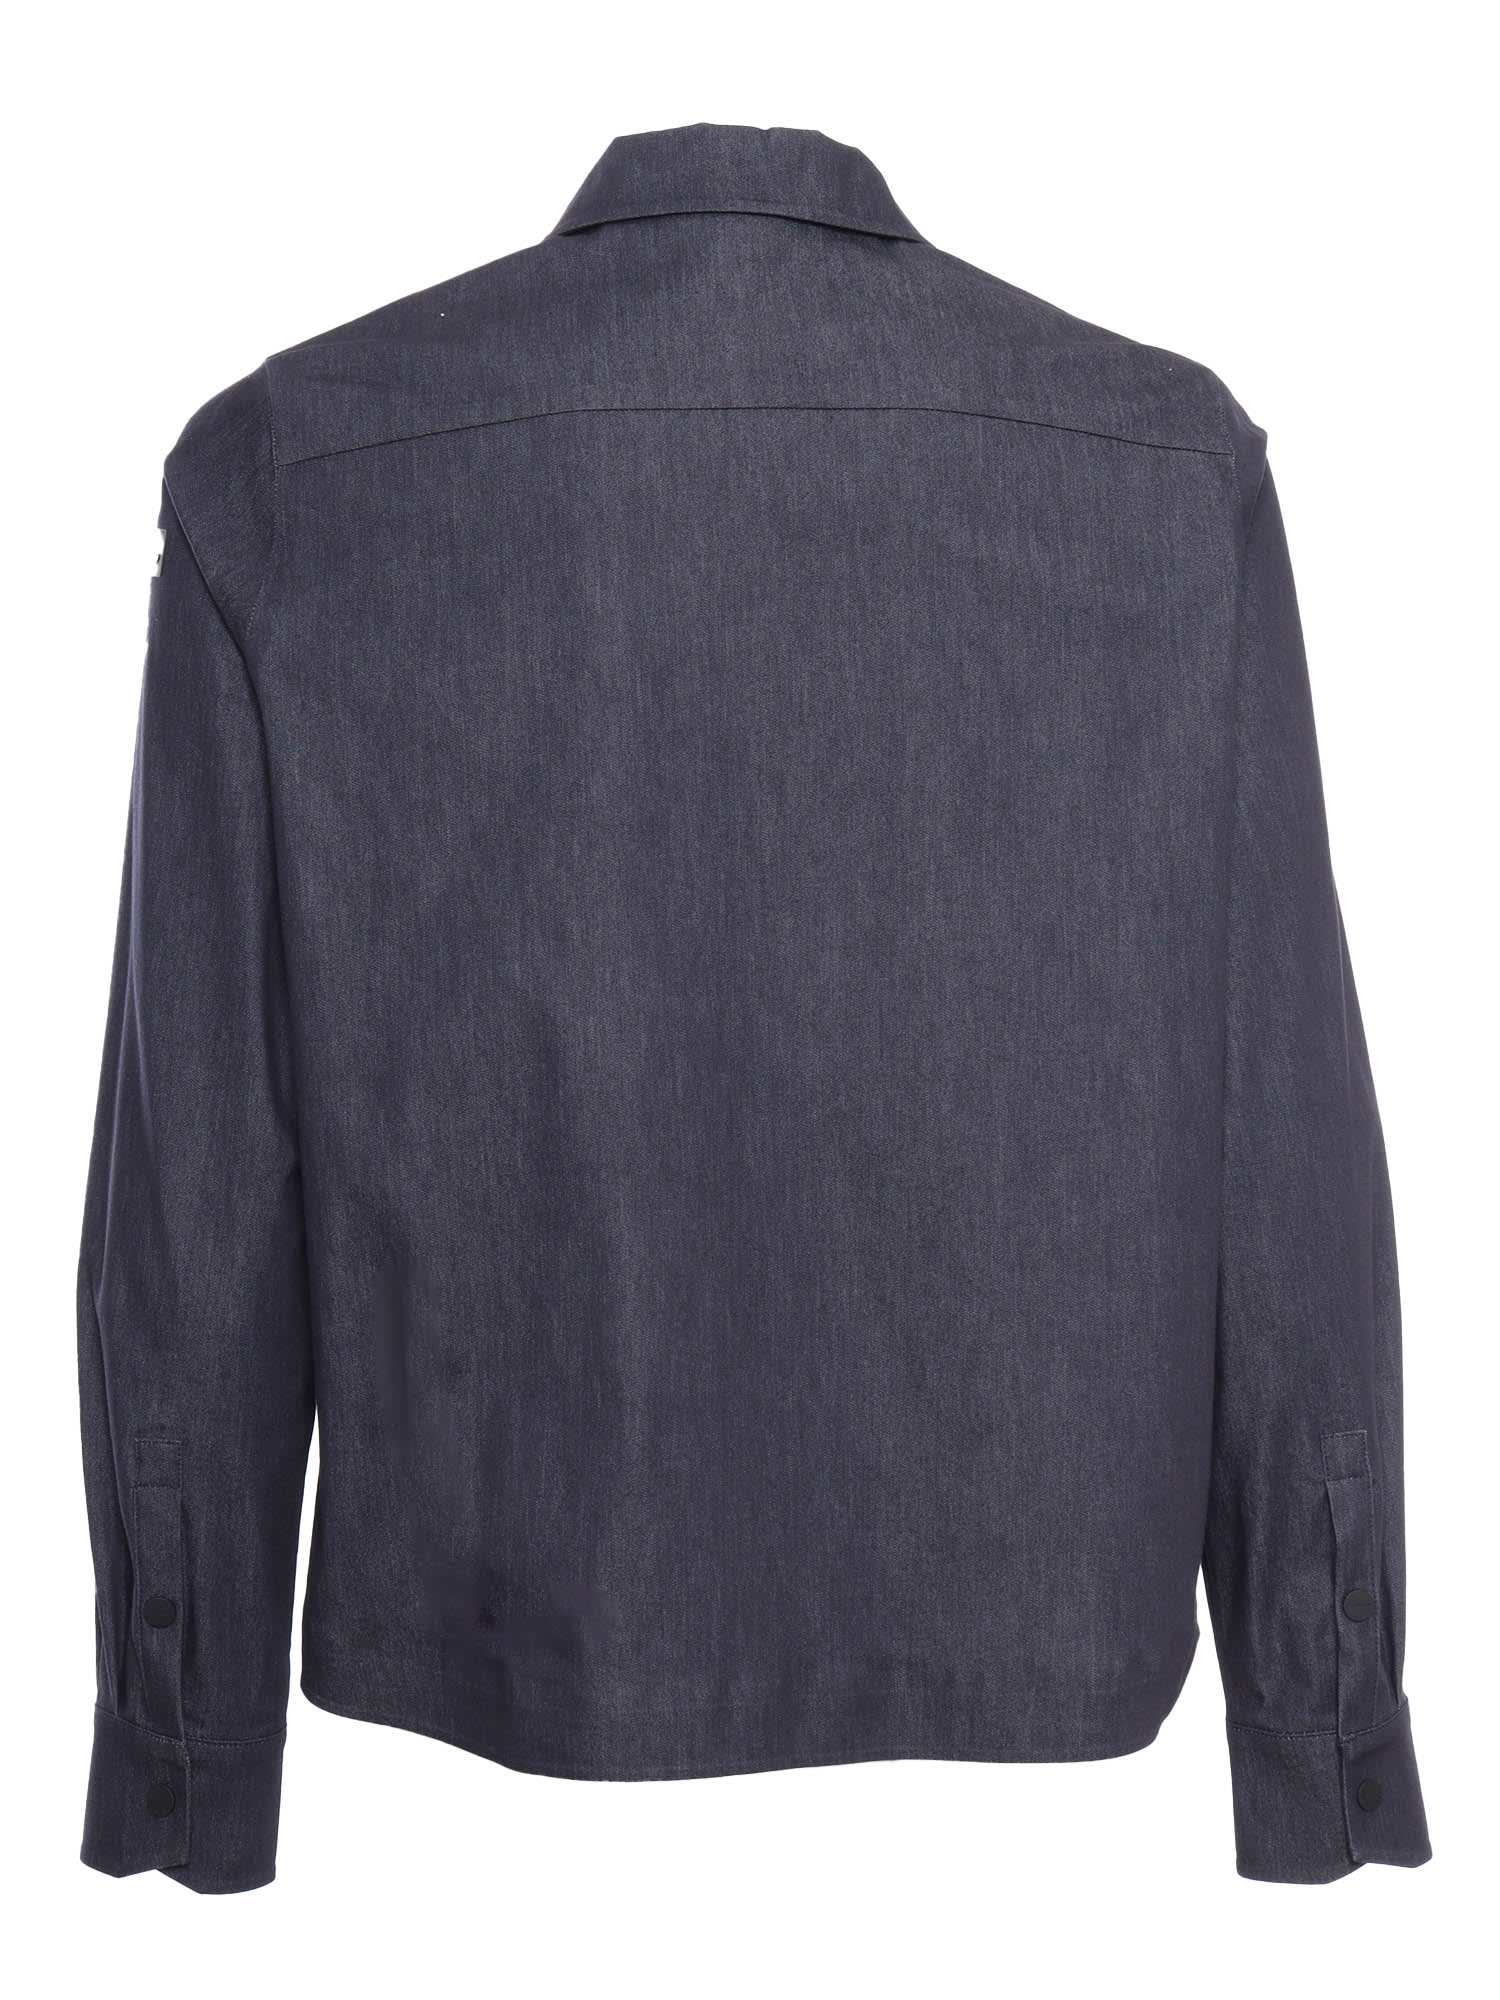 Shop Rrd - Roberto Ricci Design Blue Marina Jacket